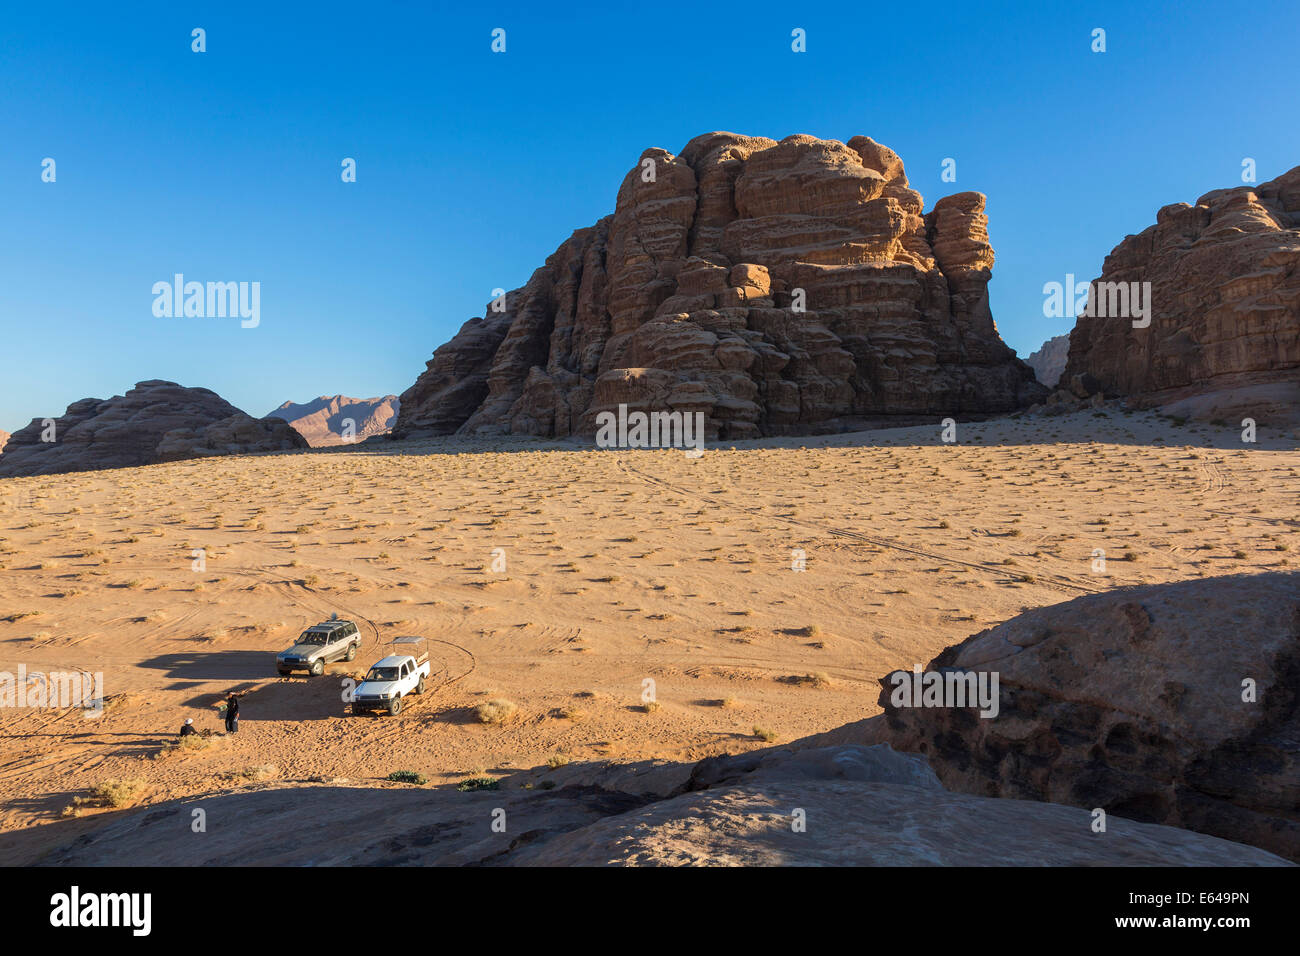 Exploring Wadi Rum desert by car, Wadi Rum, Jordan Stock Photo